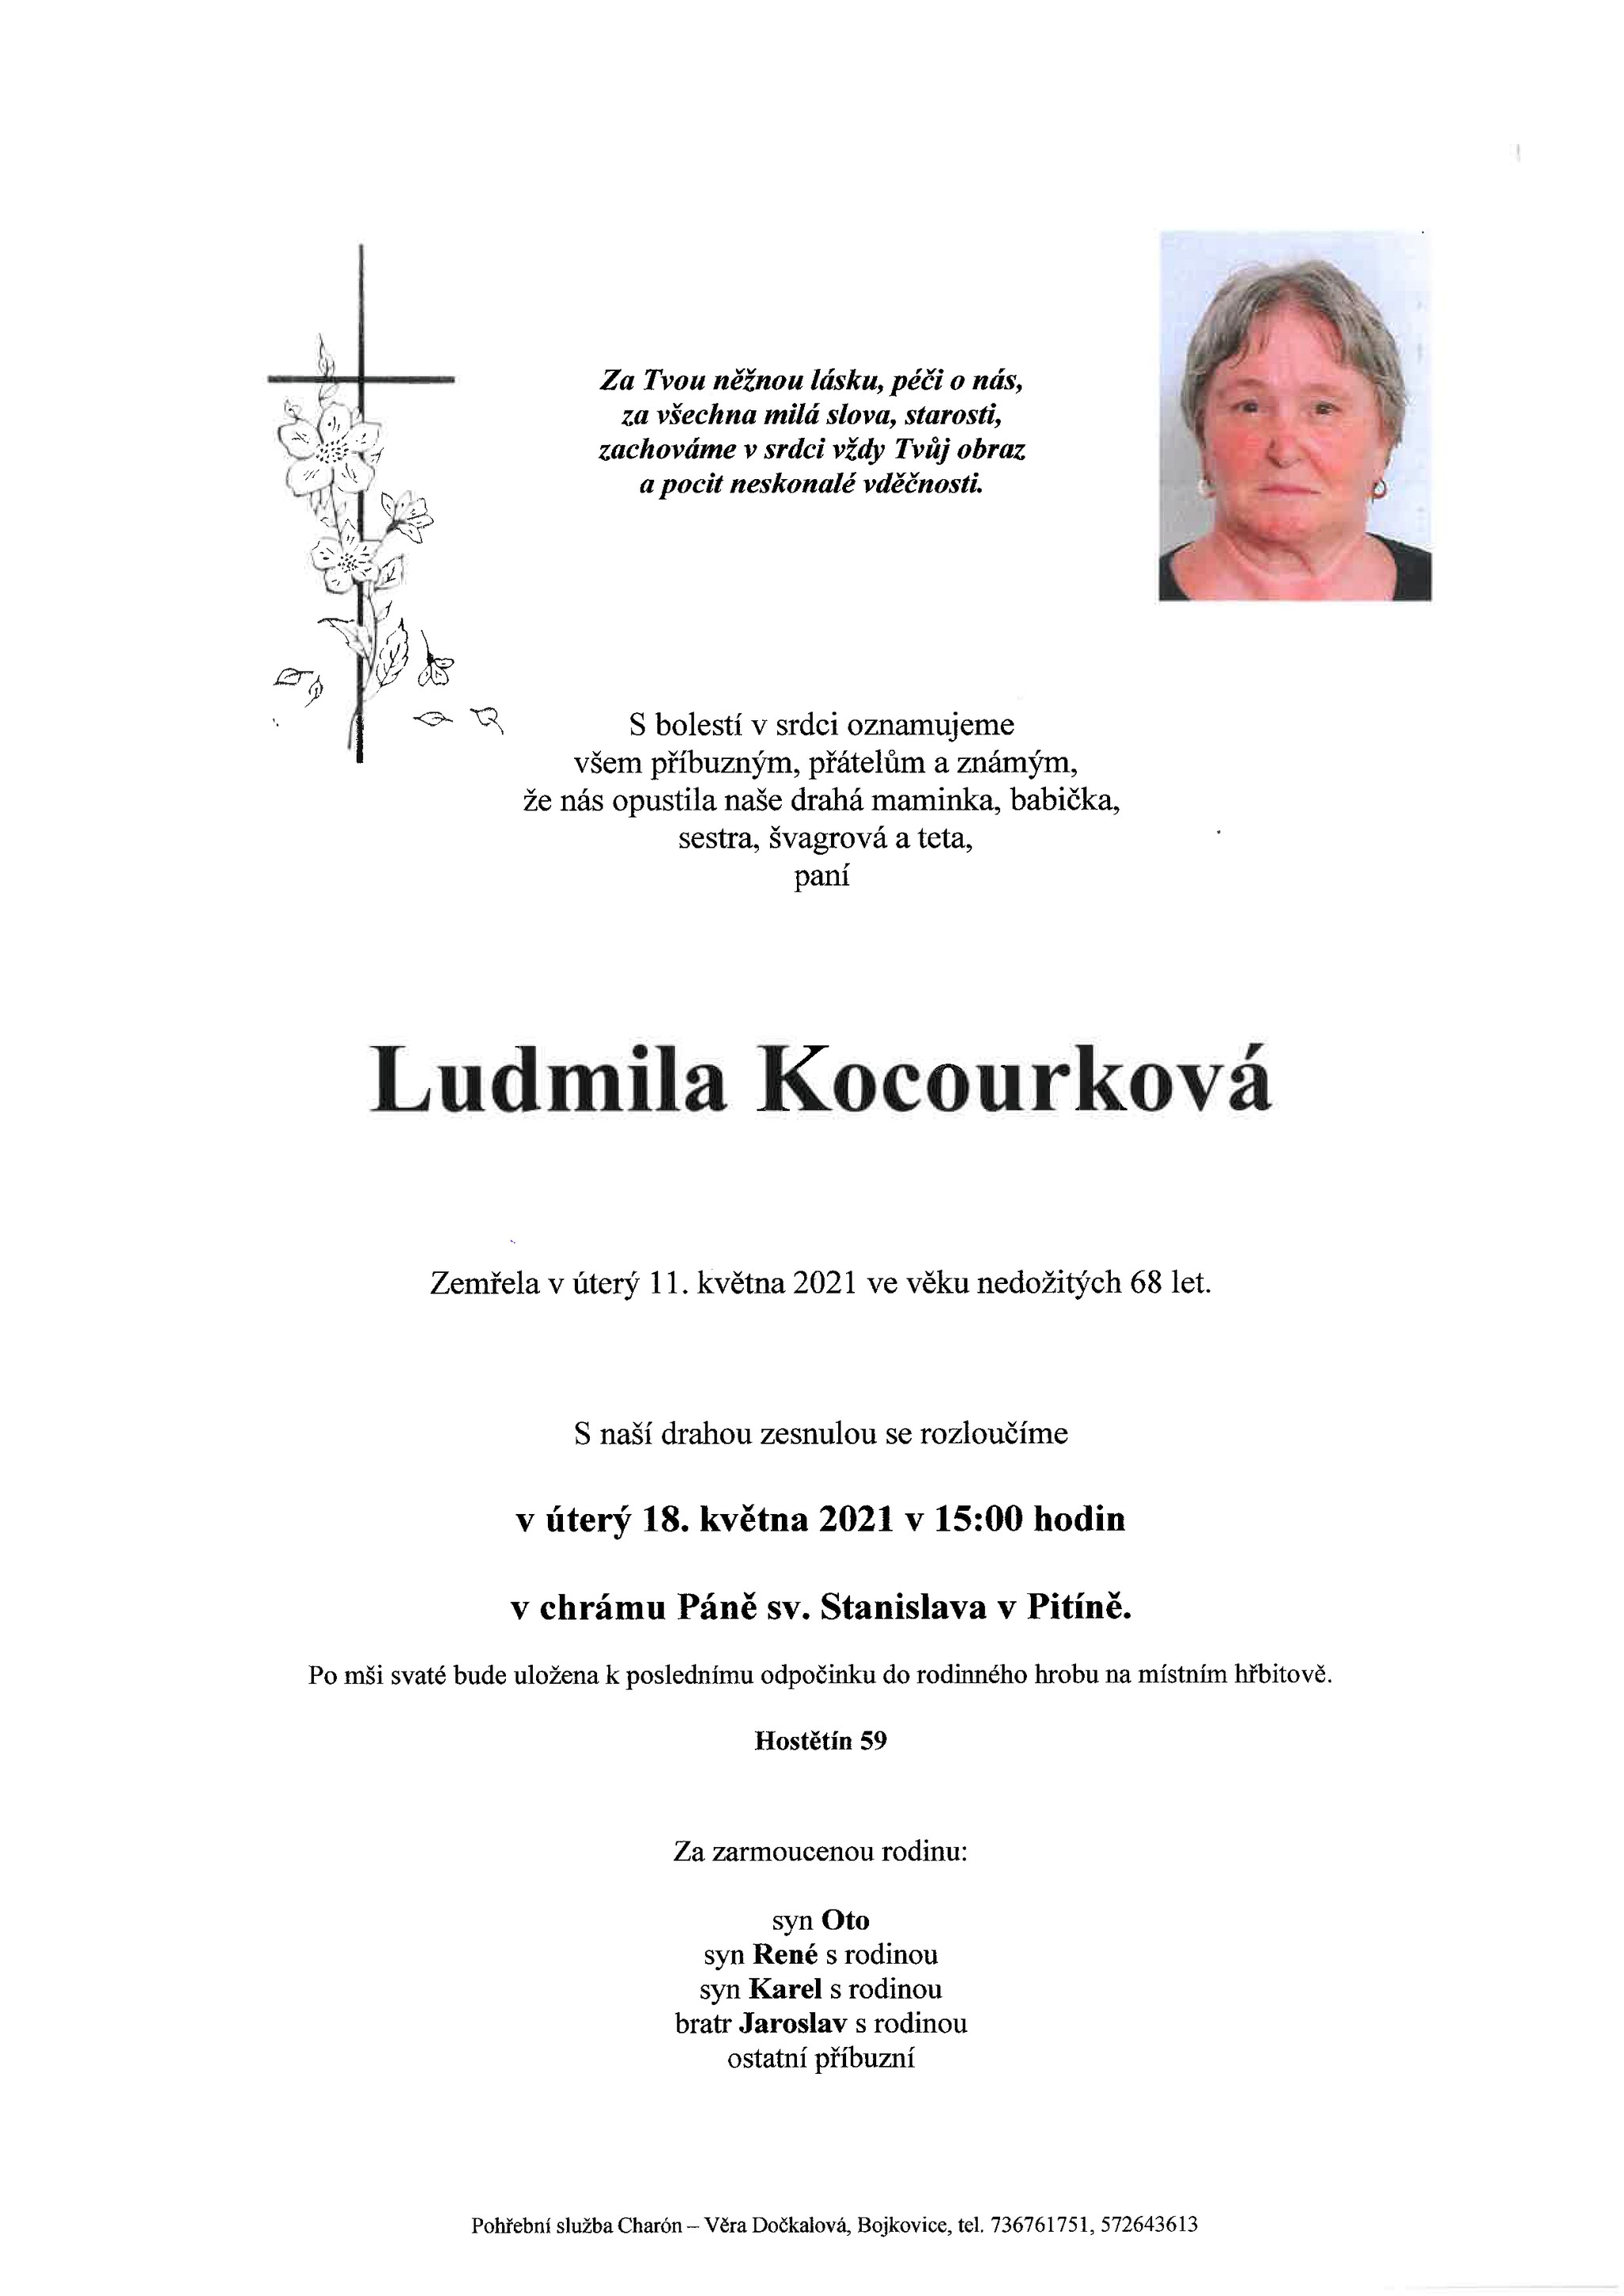 Ludmila Kocourková